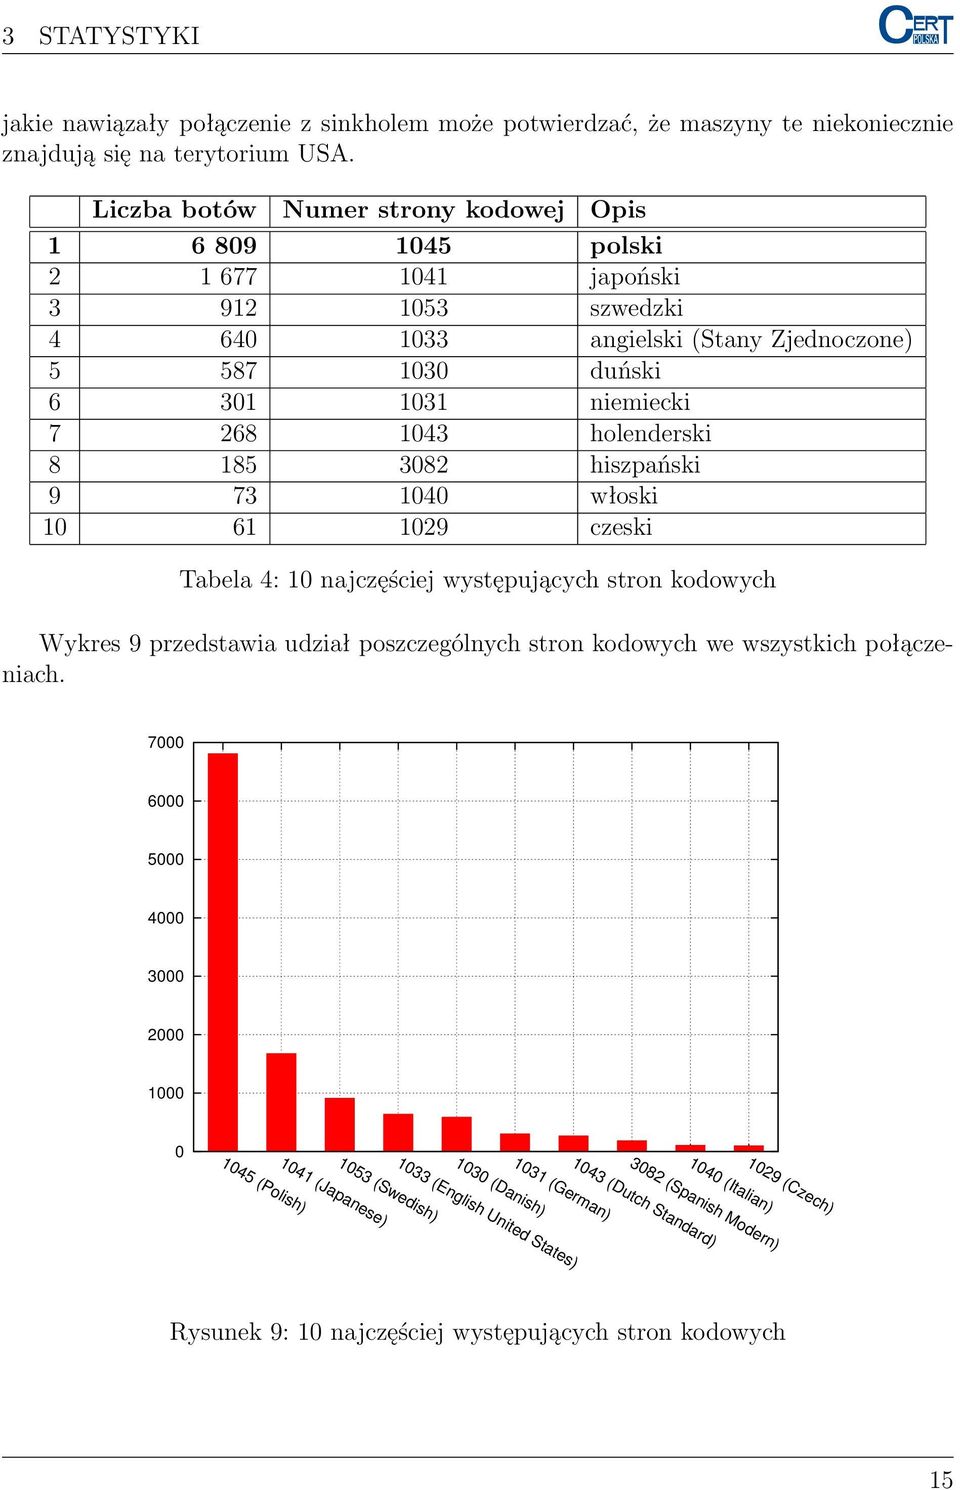 holenderski 8 185 3082 hiszpański 9 73 1040 włoski 10 61 1029 czeski Tabela 4: 10 najczęściej występujących stron kodowych Wykres 9 przedstawia udział poszczególnych stron kodowych we wszystkich